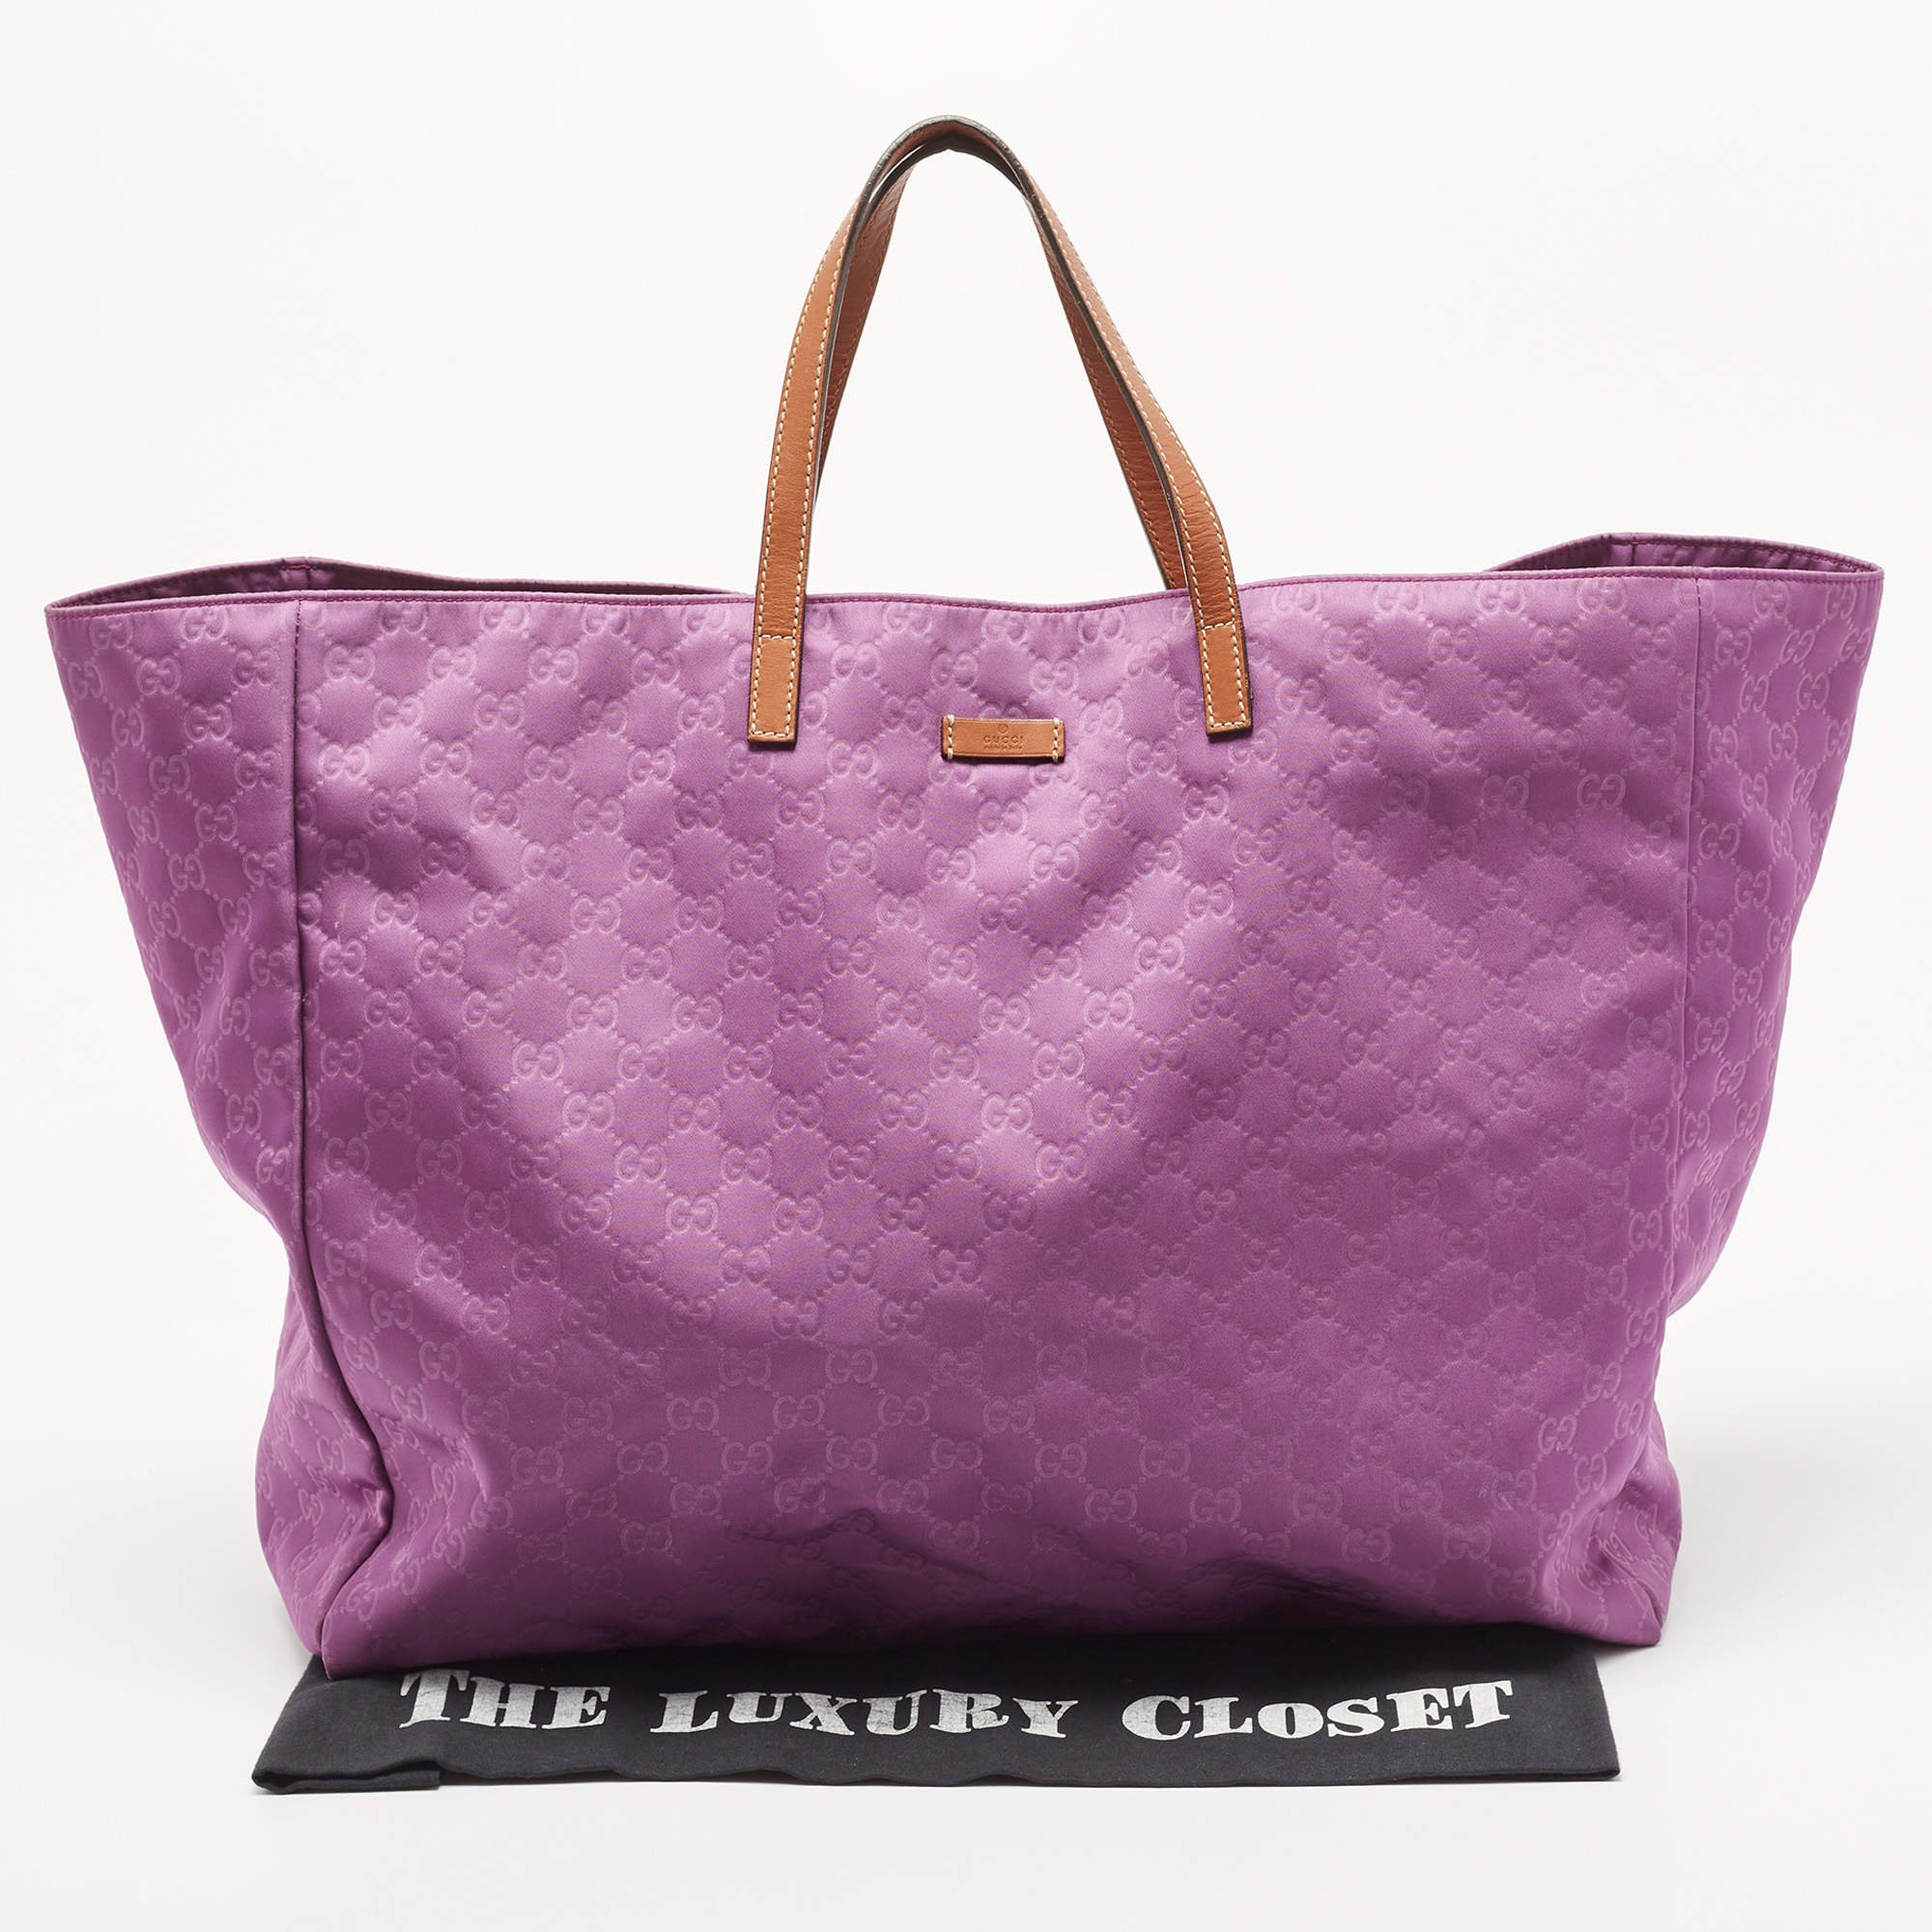 Gucci, Bags, Gucci Gg Guccissima Purple Medium Tote Bag Nwt